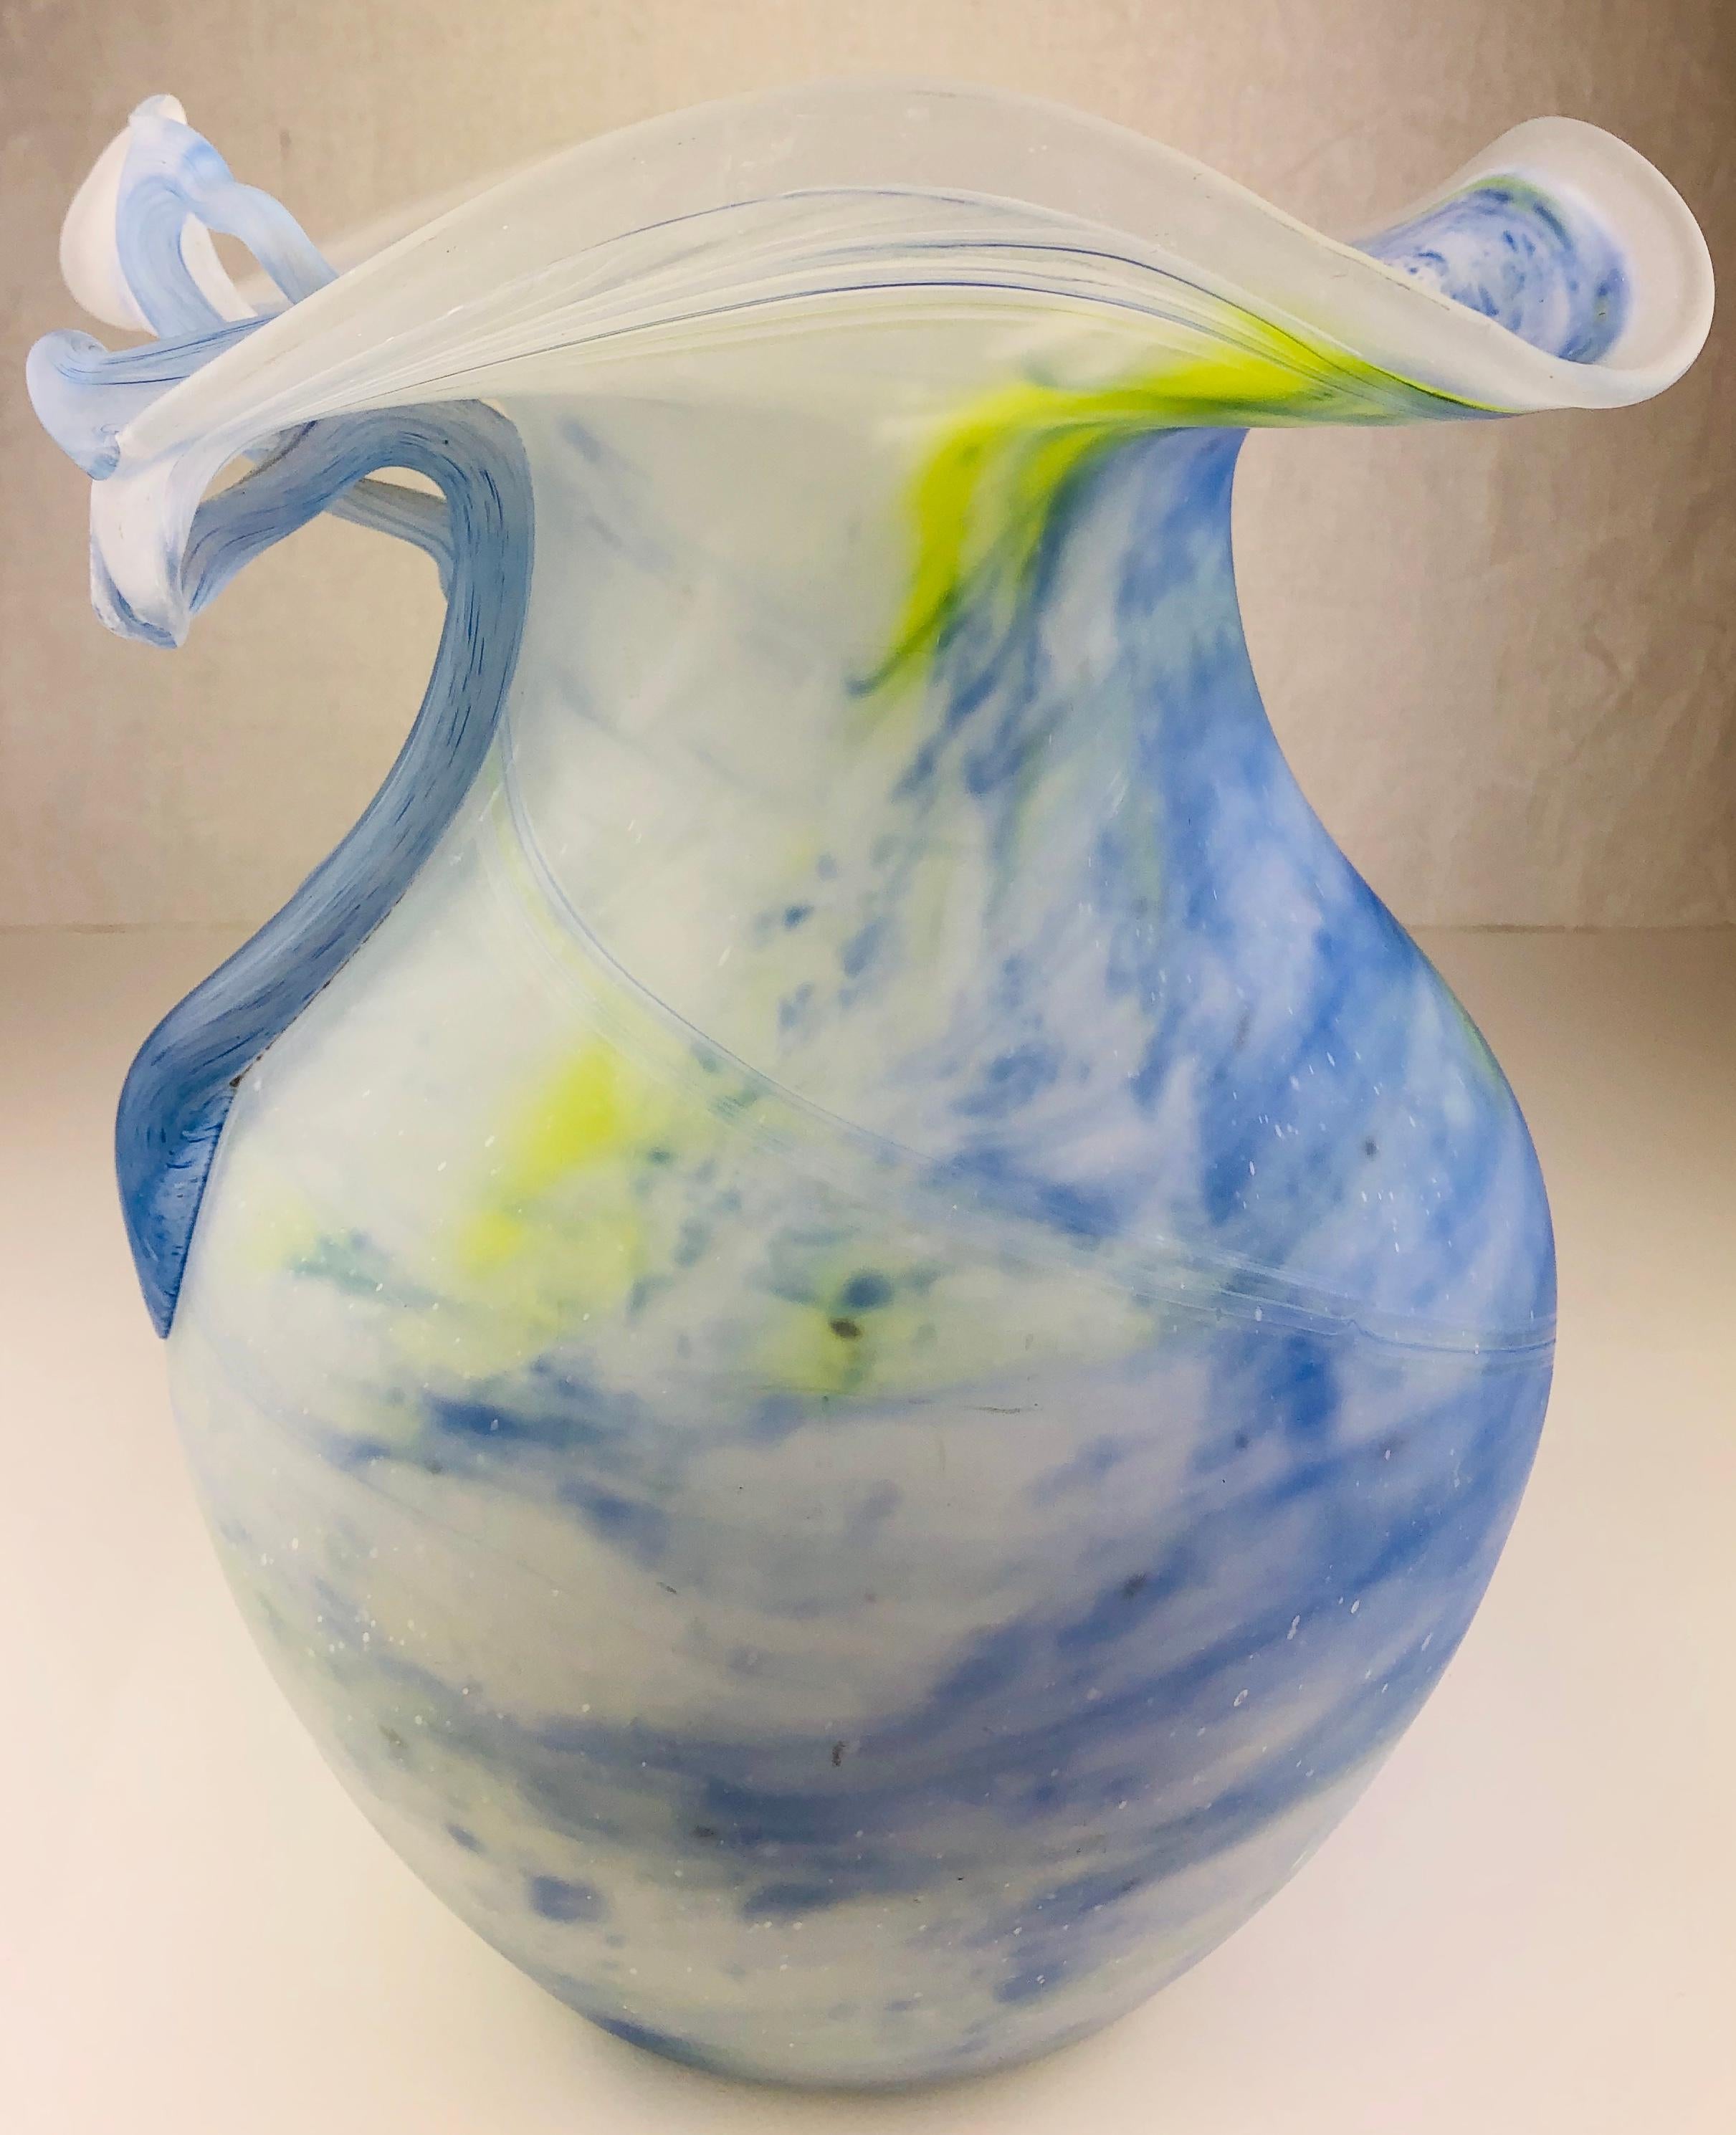 Magnifique vase français en pâte de verre ou en verre d'art fondu. Cette jolie pièce décorative a été fabriquée à la main avec des détails saisissants. 

Vase en verre soufflé à double couche dans les couleurs blanc, bleu clair et jaune. 
Mesures